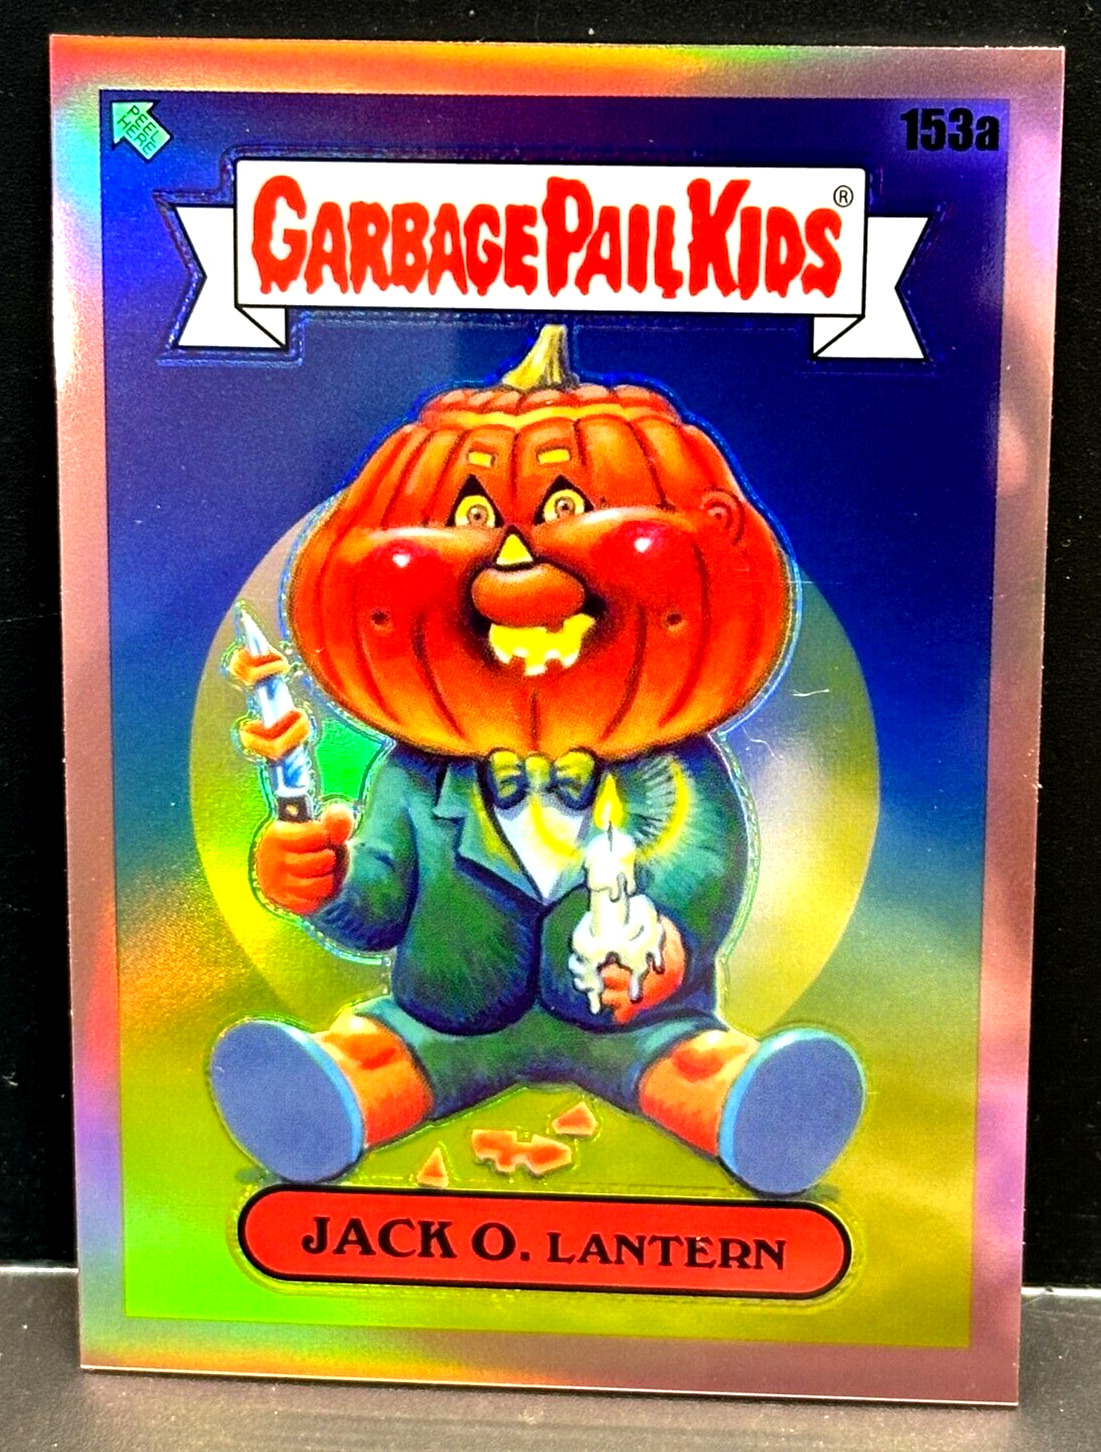 Jack O. Lantern 2021 Topps Garbage Pail Kids Chrome 4 Rose Gold Refractor #d /25